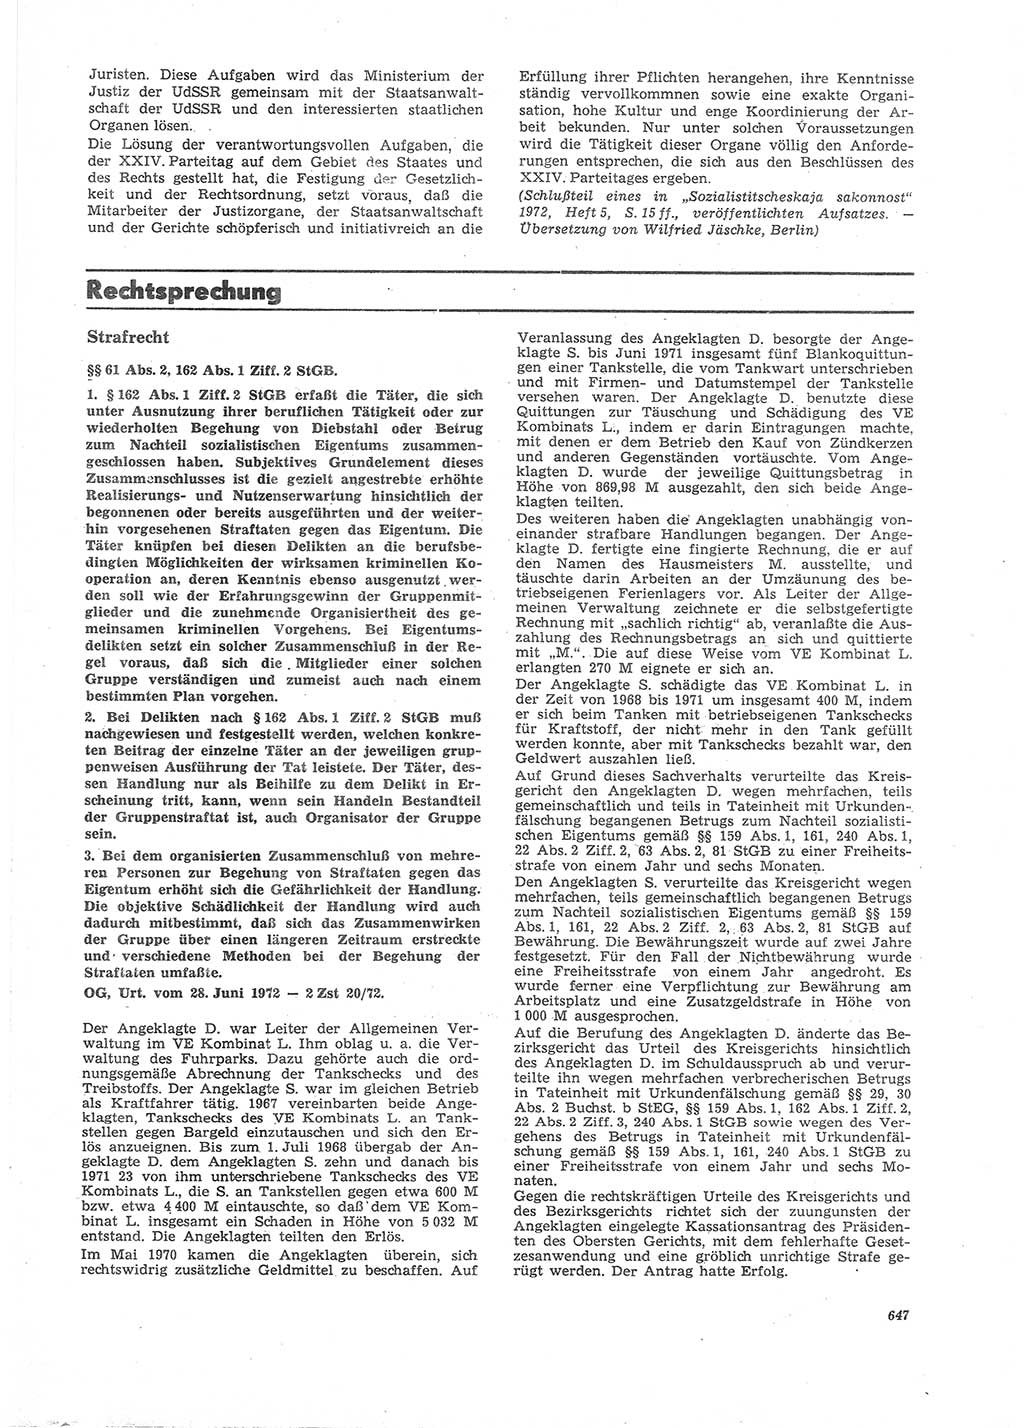 Neue Justiz (NJ), Zeitschrift für Recht und Rechtswissenschaft [Deutsche Demokratische Republik (DDR)], 26. Jahrgang 1972, Seite 647 (NJ DDR 1972, S. 647)